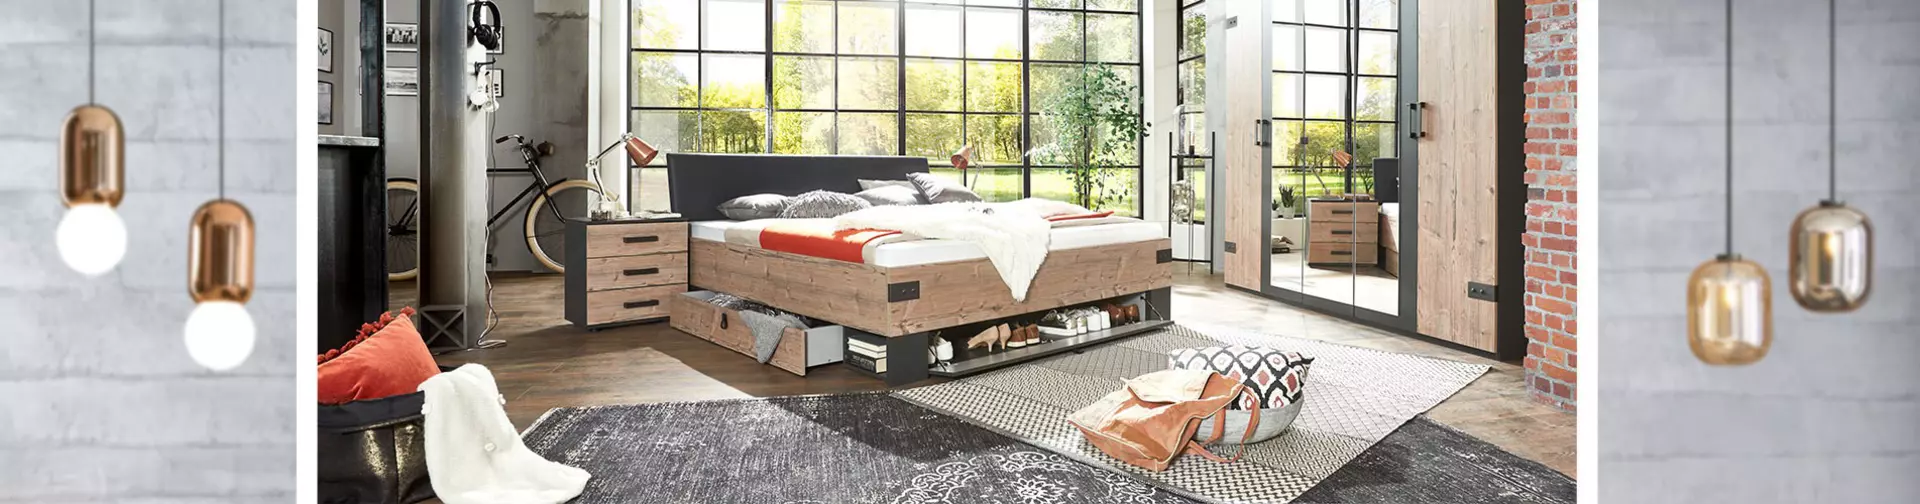 Lassen Sie sich inspirieren für einen industriellen Look im eigenen Schlafzimmer!